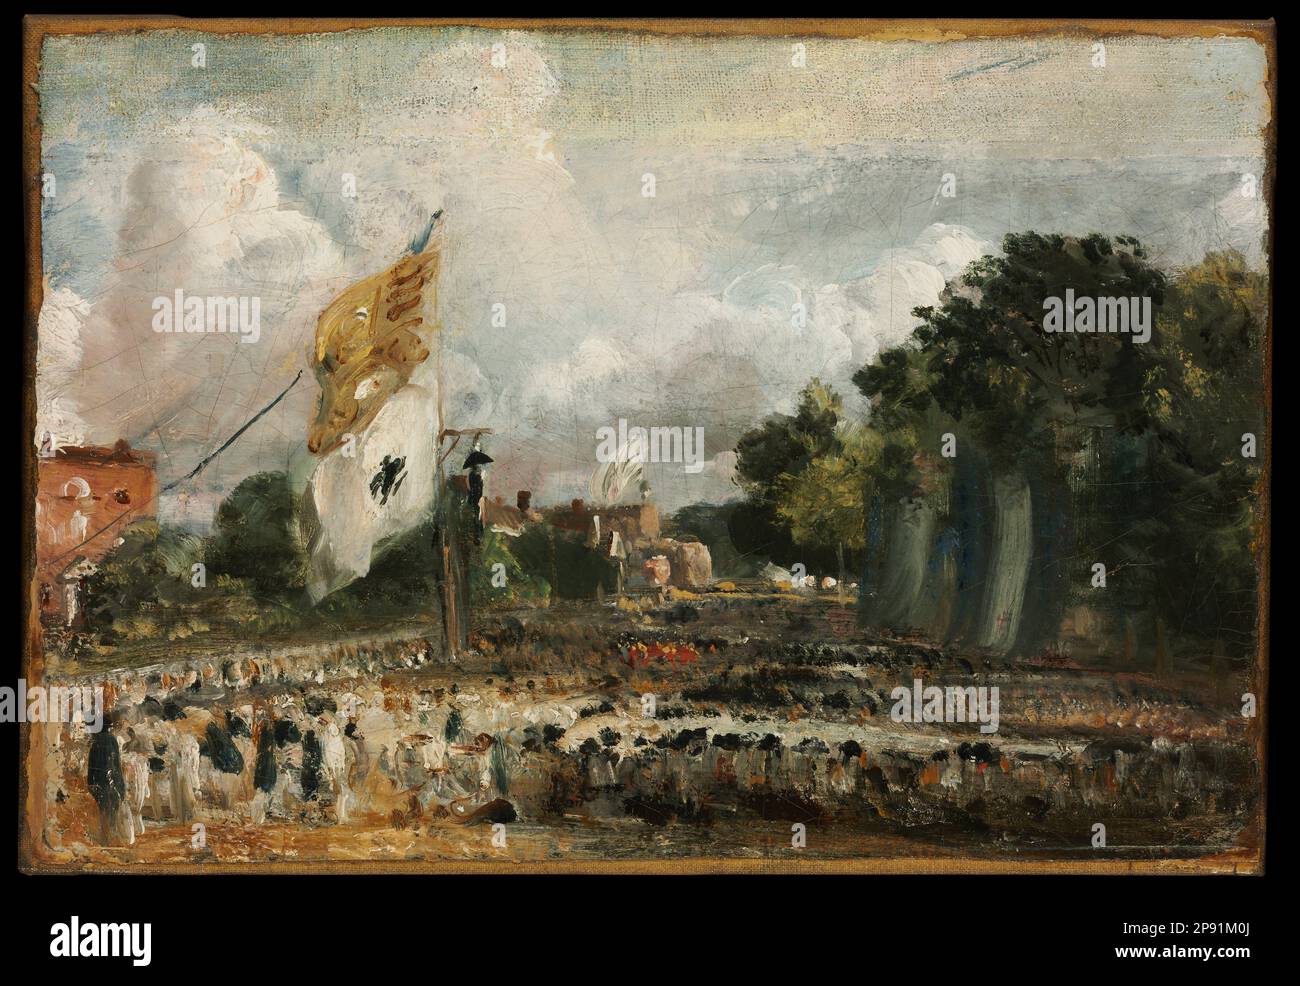 La célébration de la paix de 1814 dans le bergholt oriental s'est conclue à Paris entre la France et les puissances alliées vers 1824 par John Constable Banque D'Images